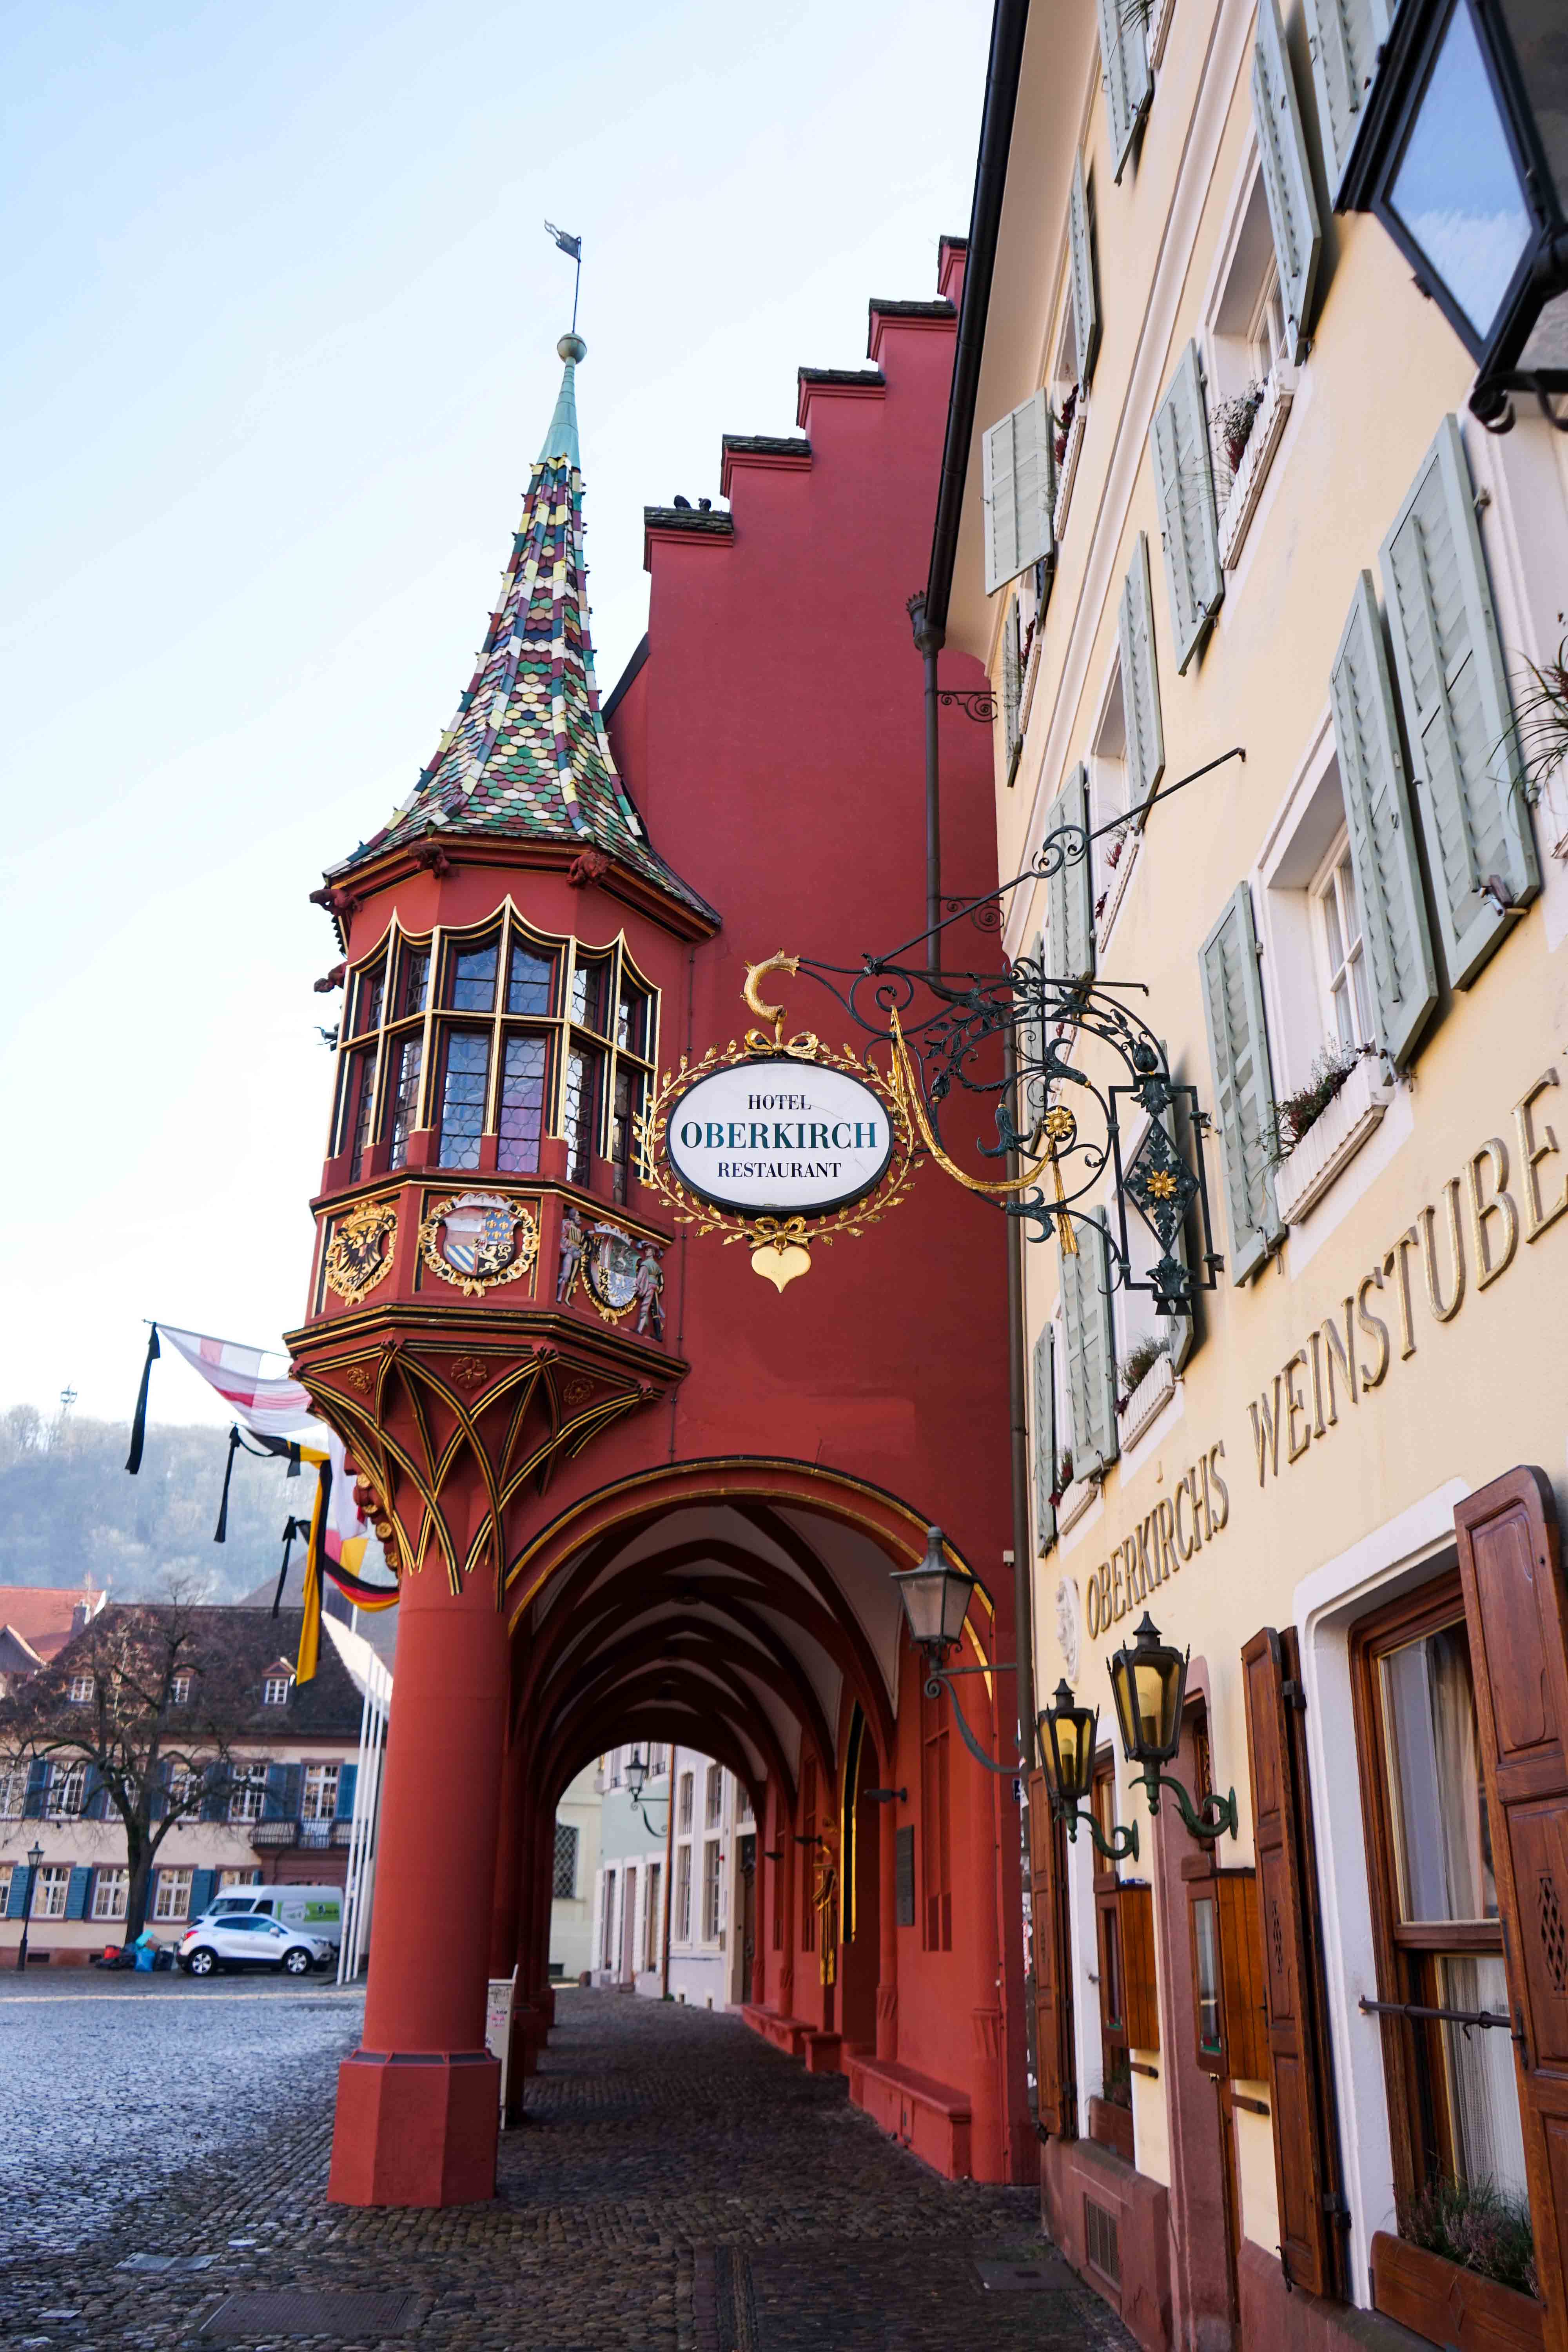 Freiburg Sehenswürdigkeiten Wochenendtrip Freiburg historische Kaufhaus Reiseblog Freiburg Tipps